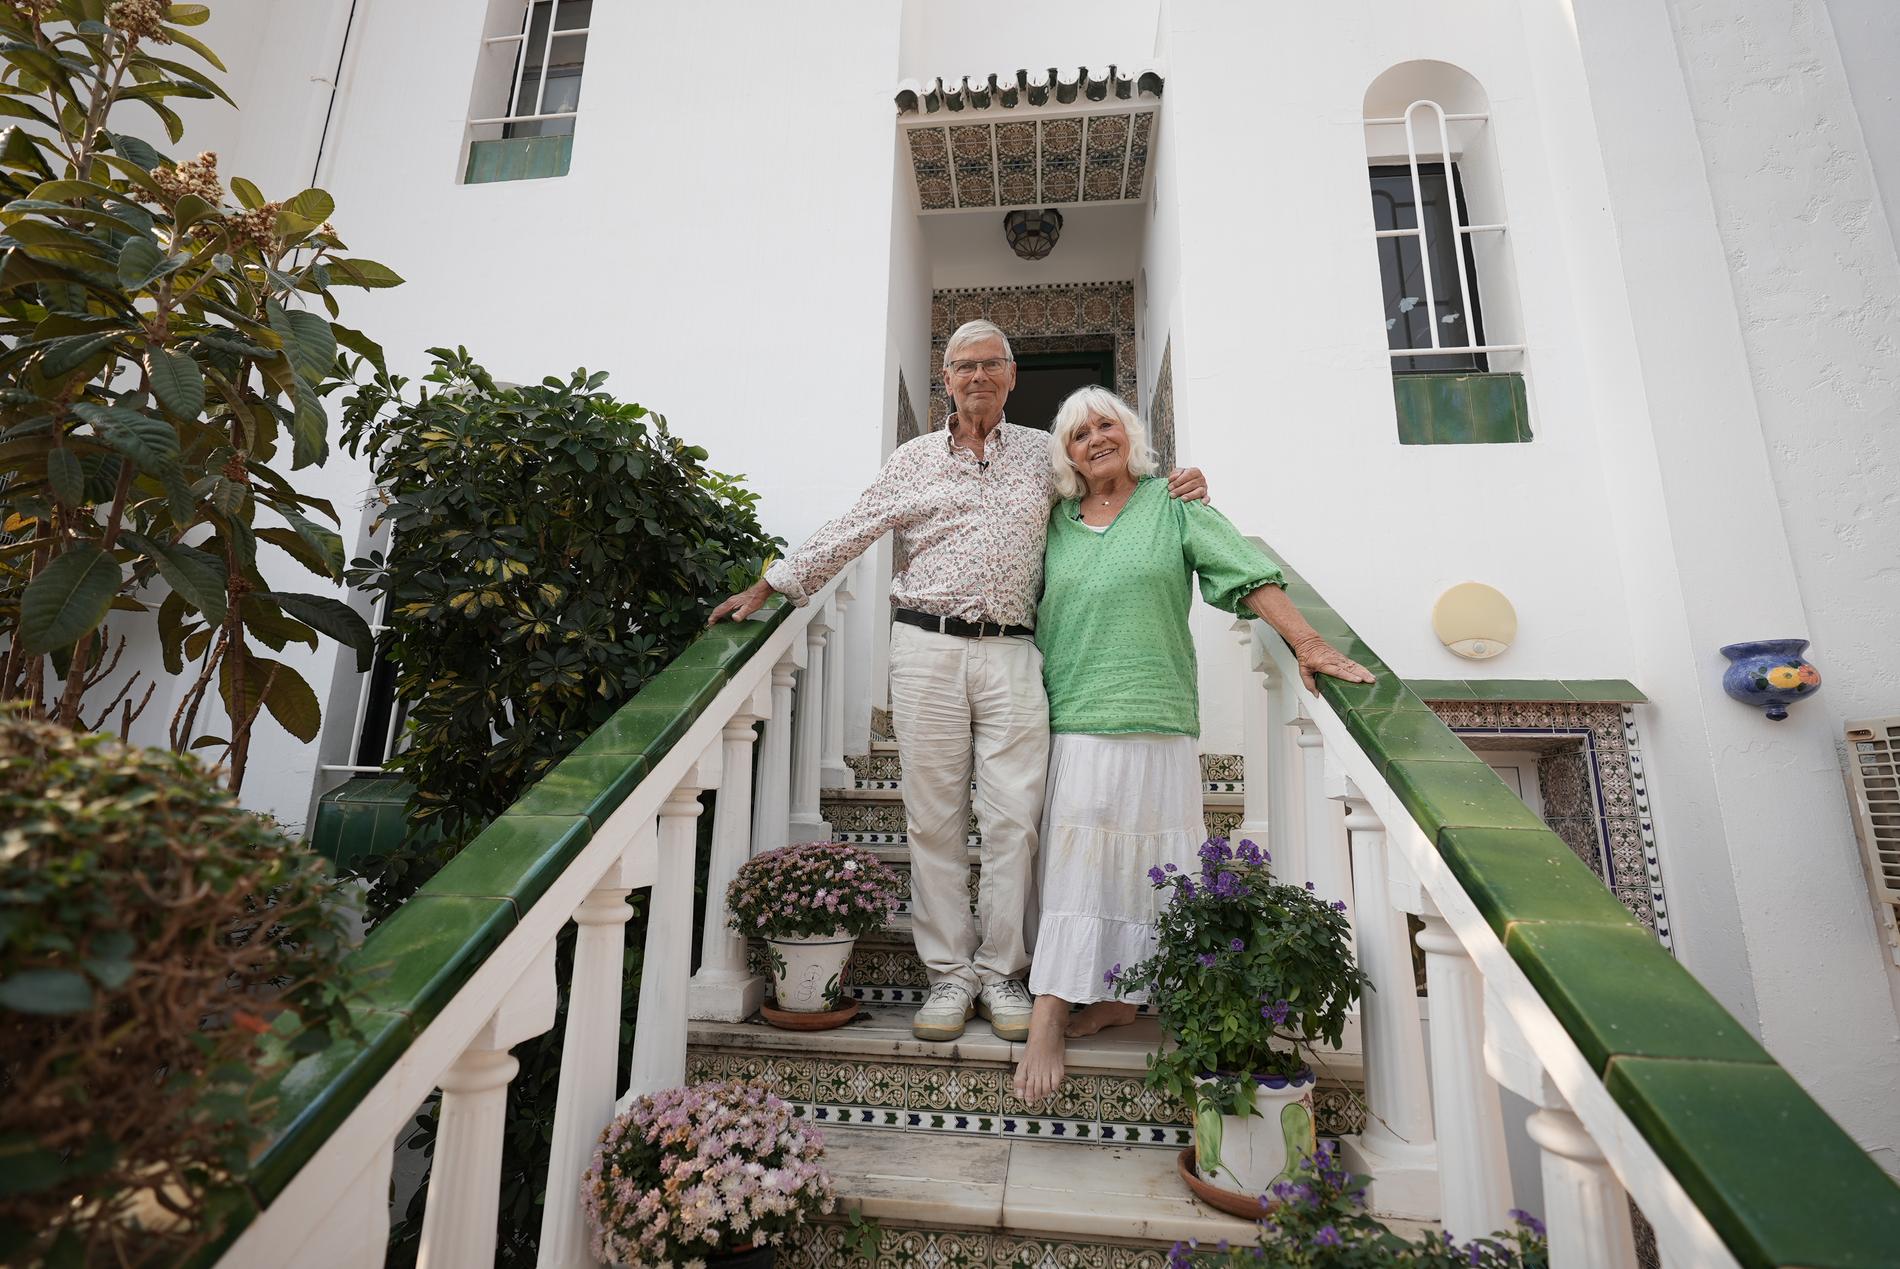 I 22 år har Hans Wahlgren och Christina Schollin haft huset i Nerja. 